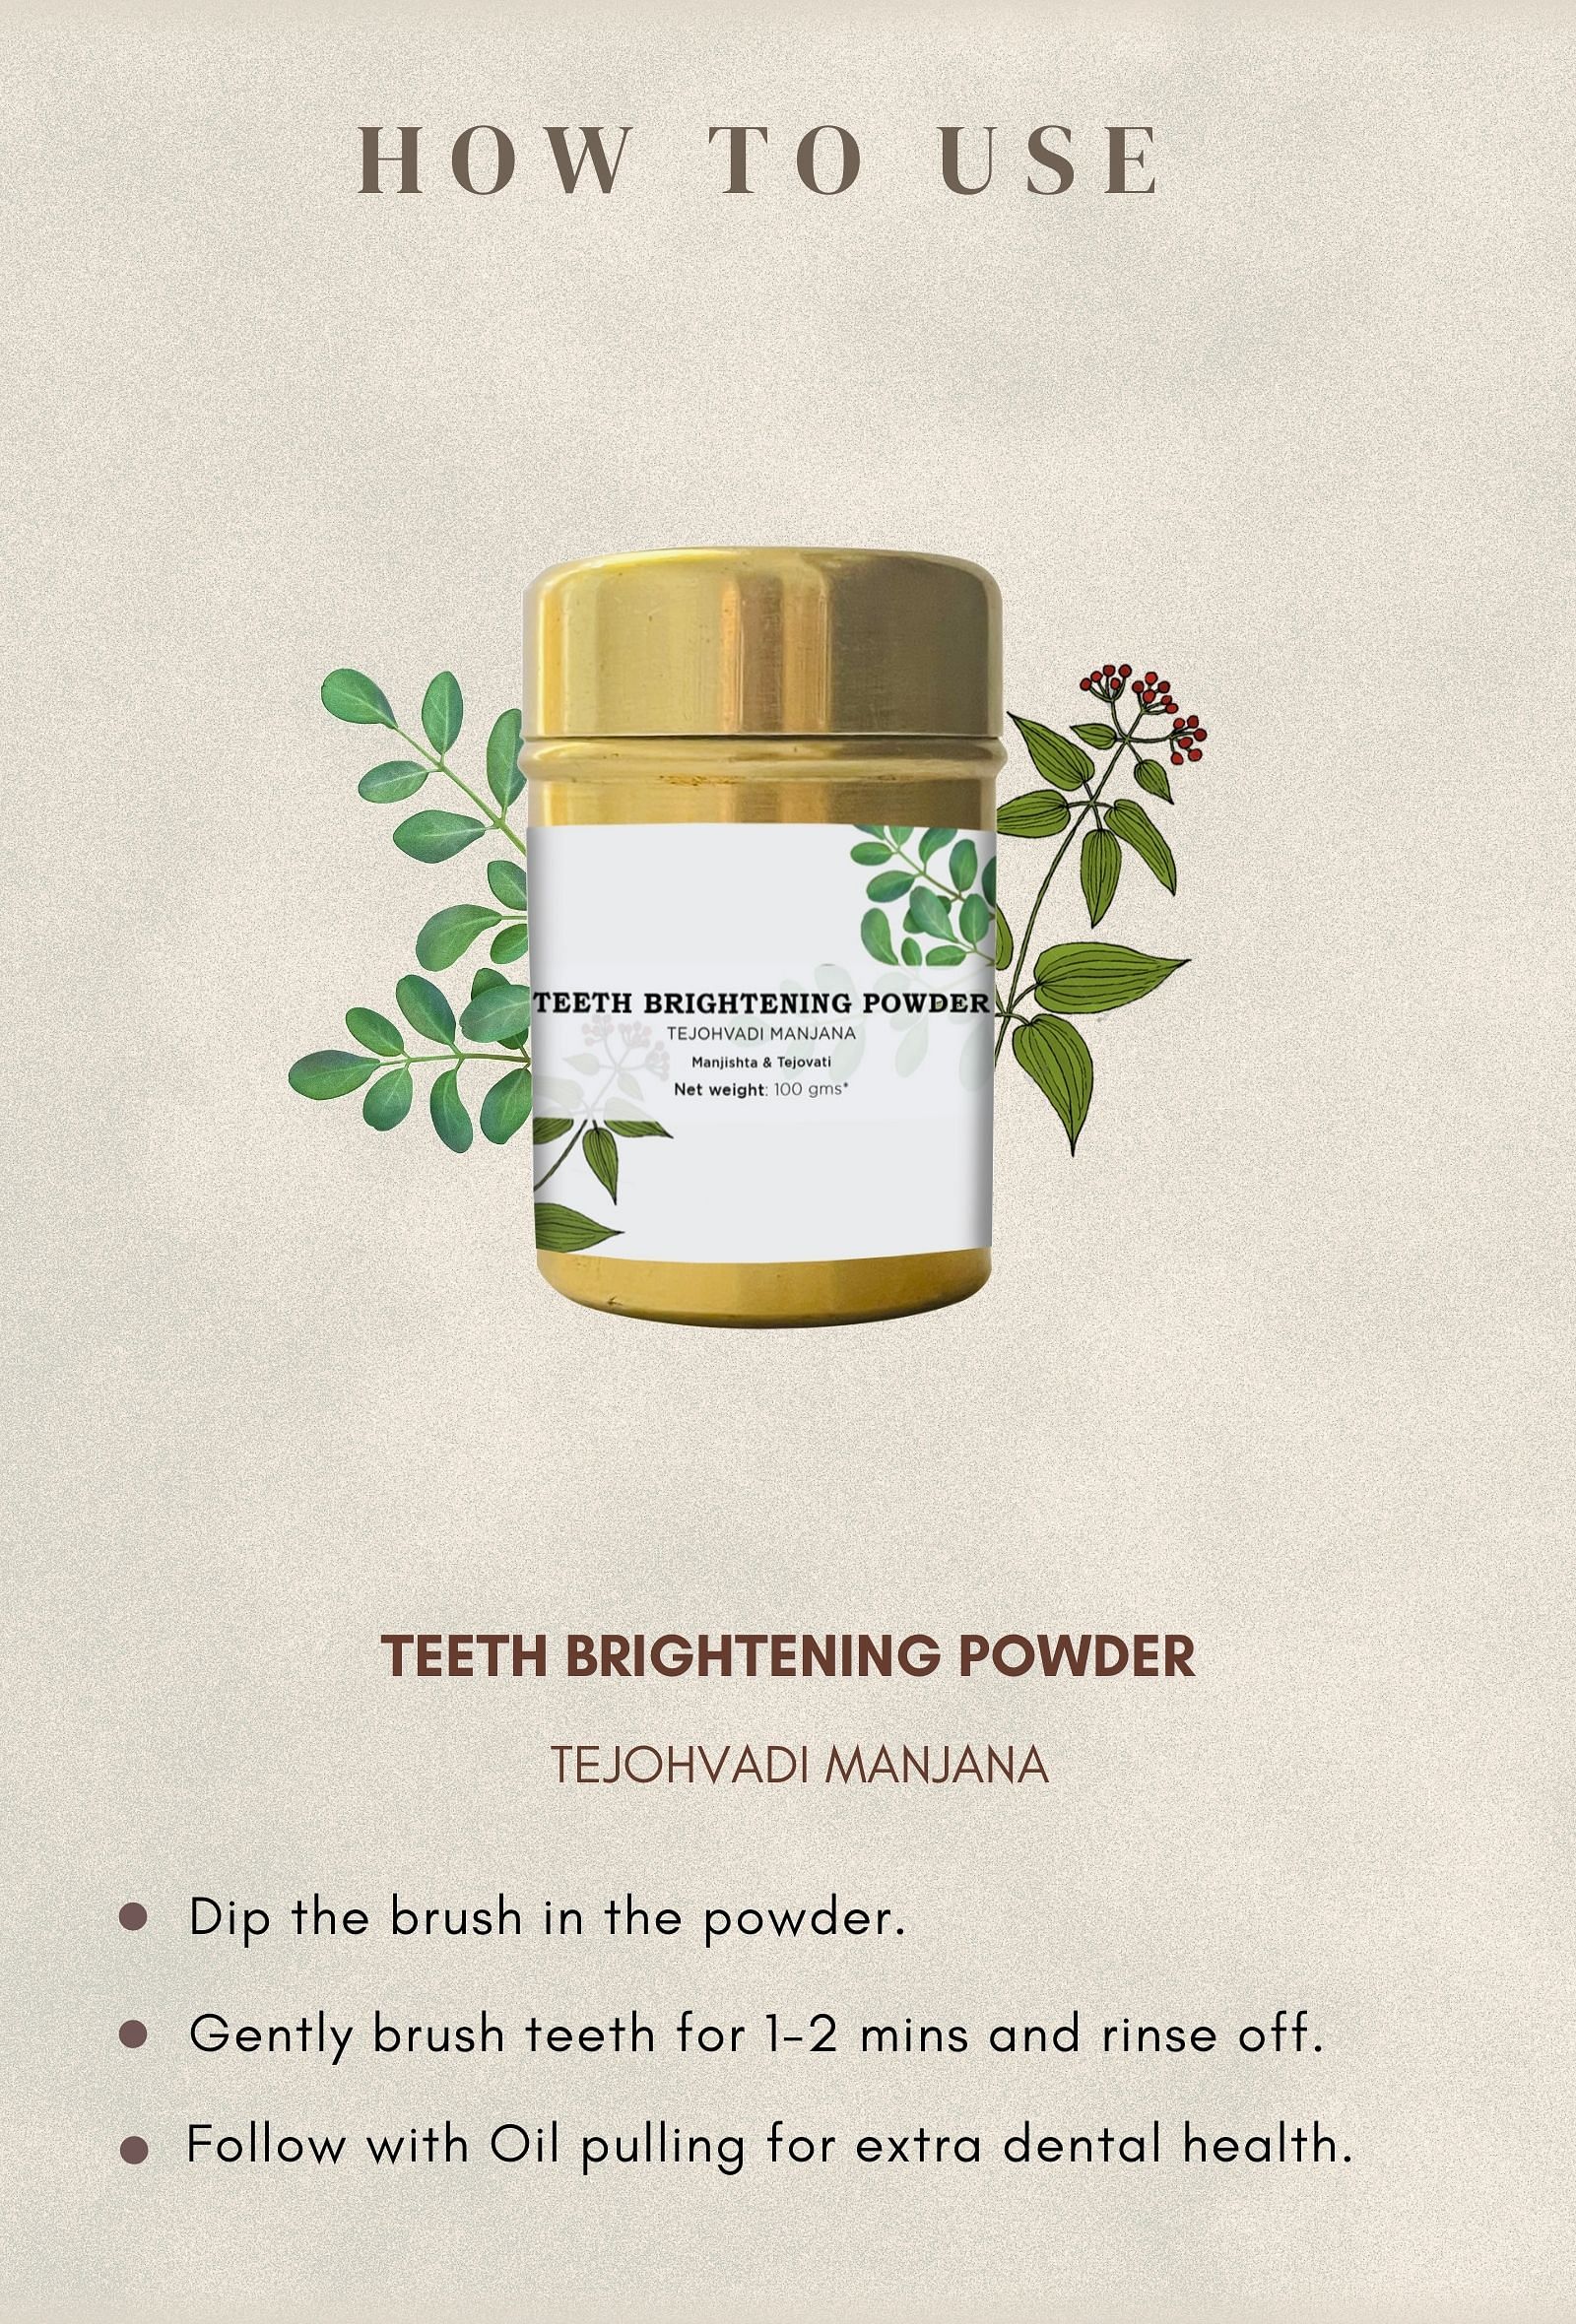 Teeth Brightening Powder: TEJOHVADI MANJANA : Manjishta & Tejovati